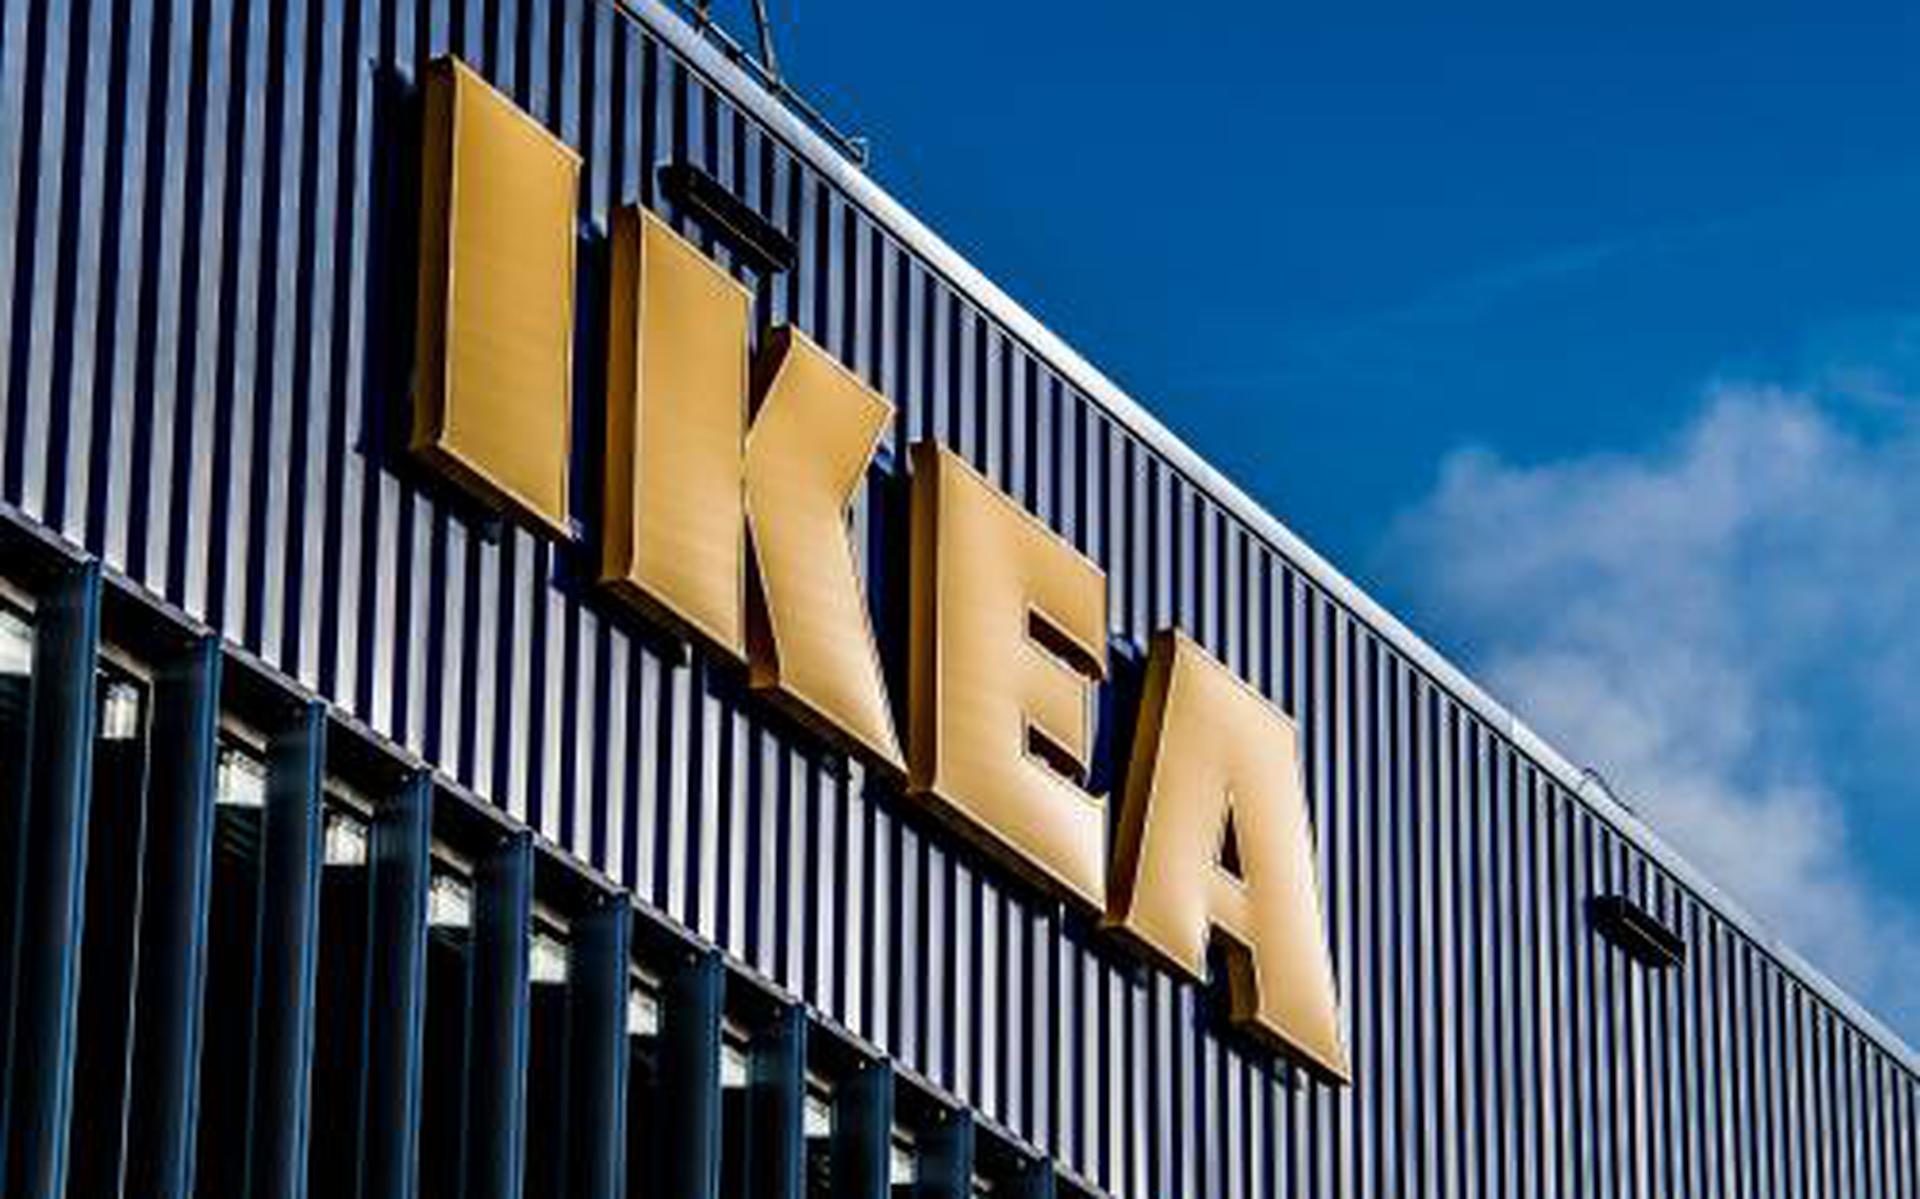 Maan oppervlakte Variant argument IKEA Groningen gesloten tot en met 6 april - Dagblad van het Noorden